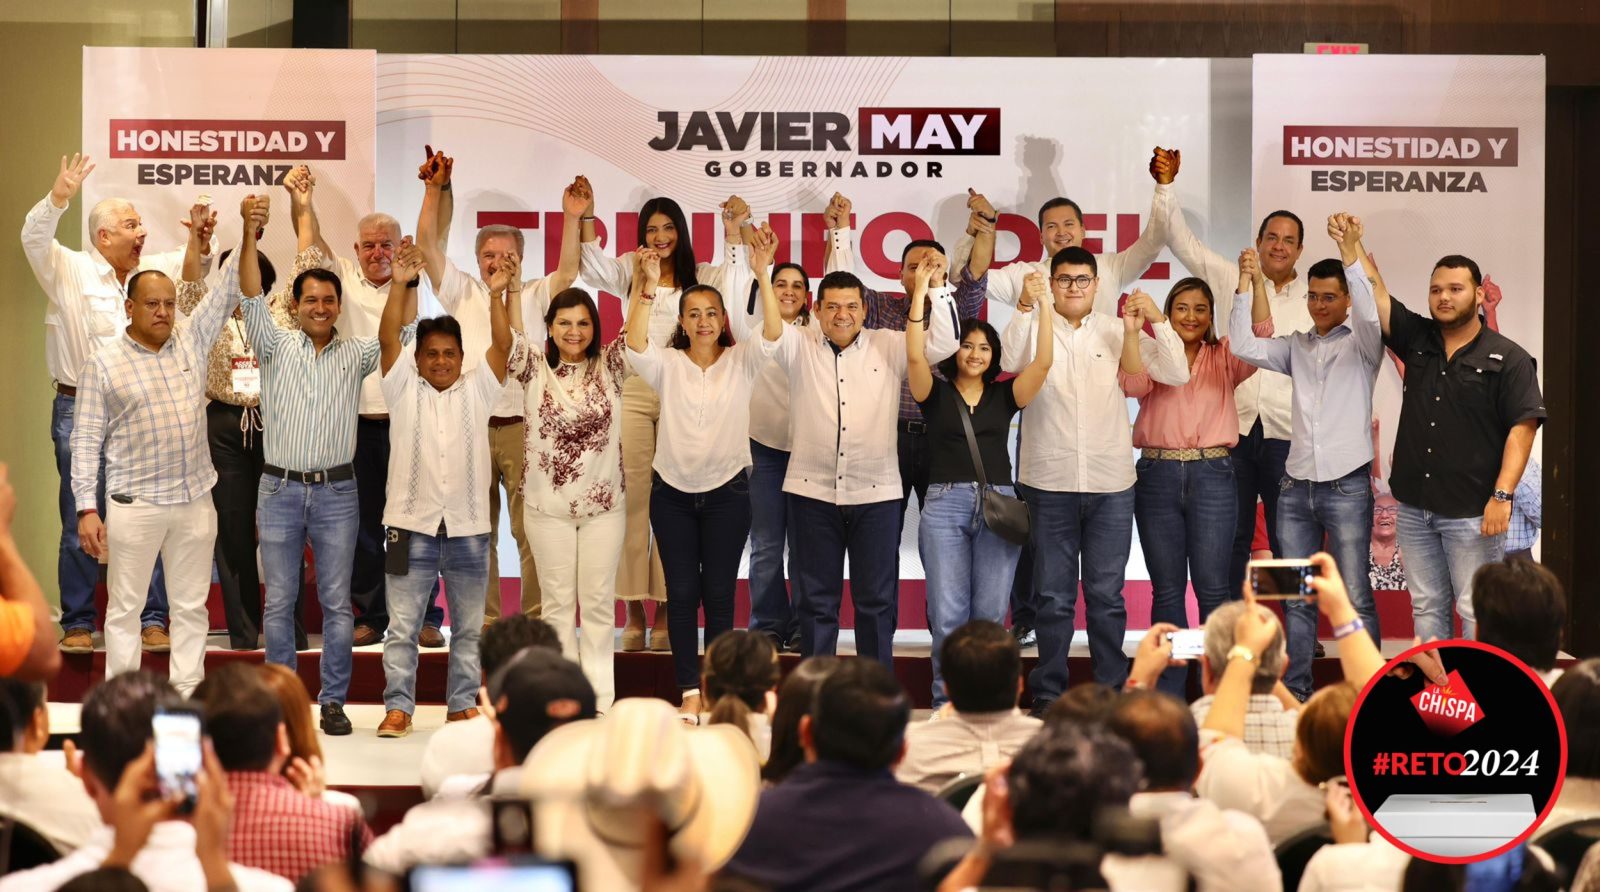 ¡Ganamos la gubernatura de Tabasco! Es un triunfo contundente del pueblo: Javier May